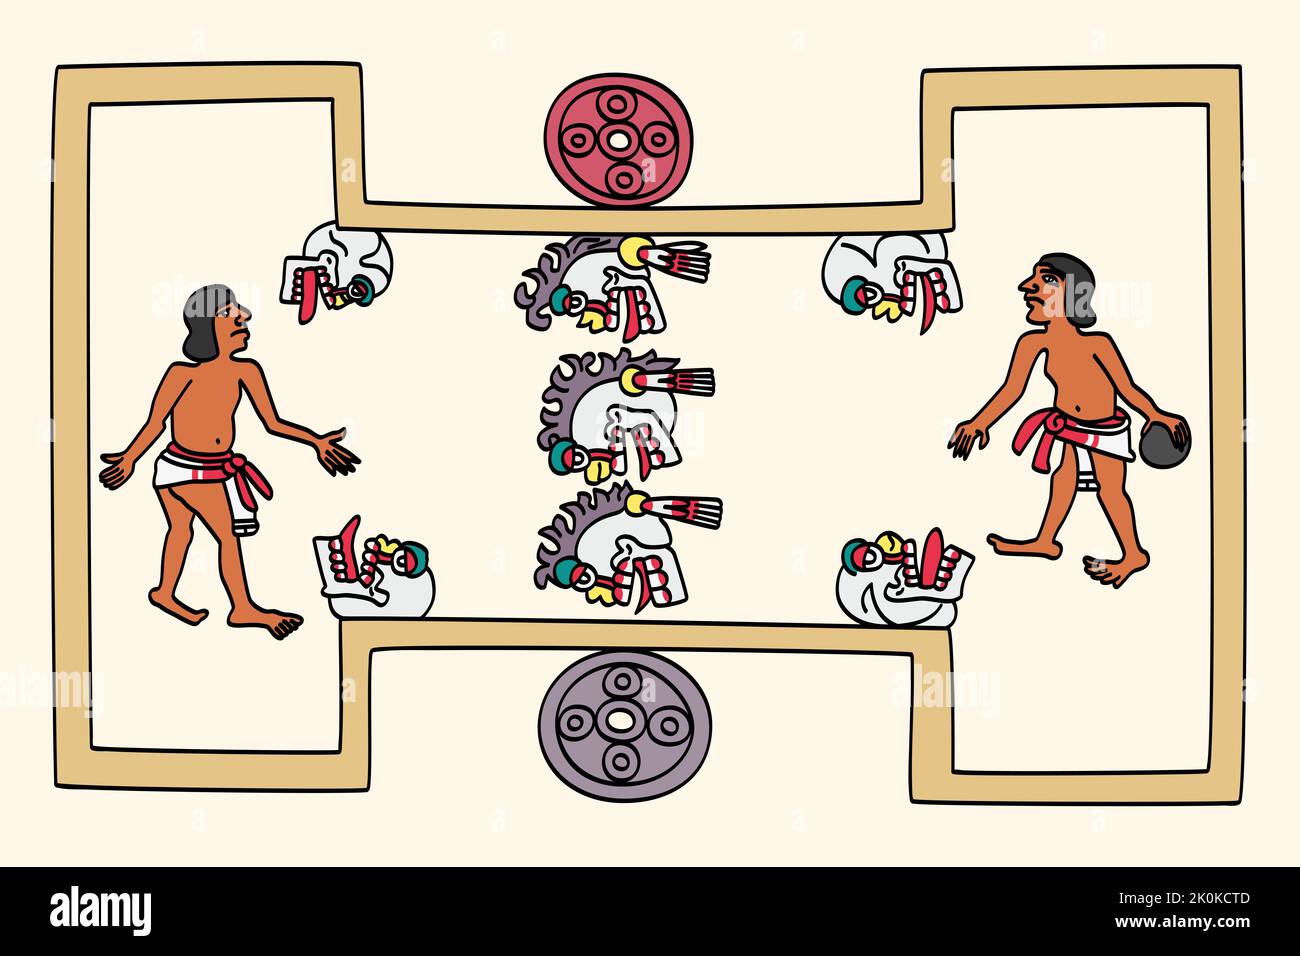 Les joueurs d'Aztec jouent à un jeu de balle de caoutchouc. Le jeu de ballon Mesoamerican est un sport de 3600 ans avec des associations rituelles, jouées par les précolombiens. Banque D'Images